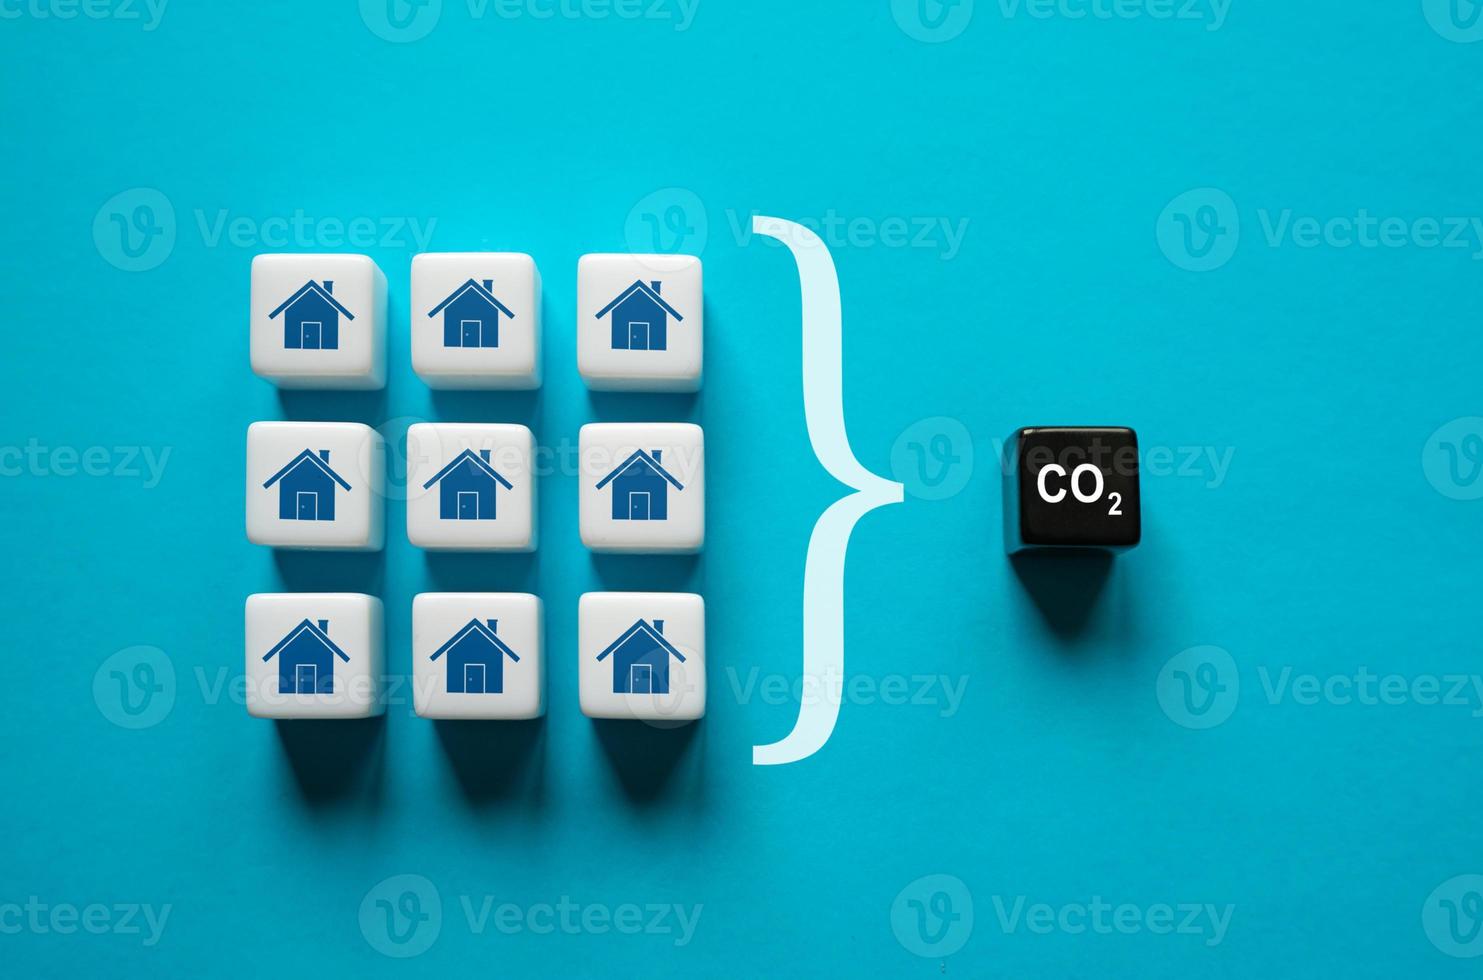 production globale de dioxyde de carbone co2 par les ménages. améliorer l'efficacité énergétique, réduire l'impact sur l'environnement. décarburation. changement climatique. transition énergétique verte. réduction de la pollution. photo